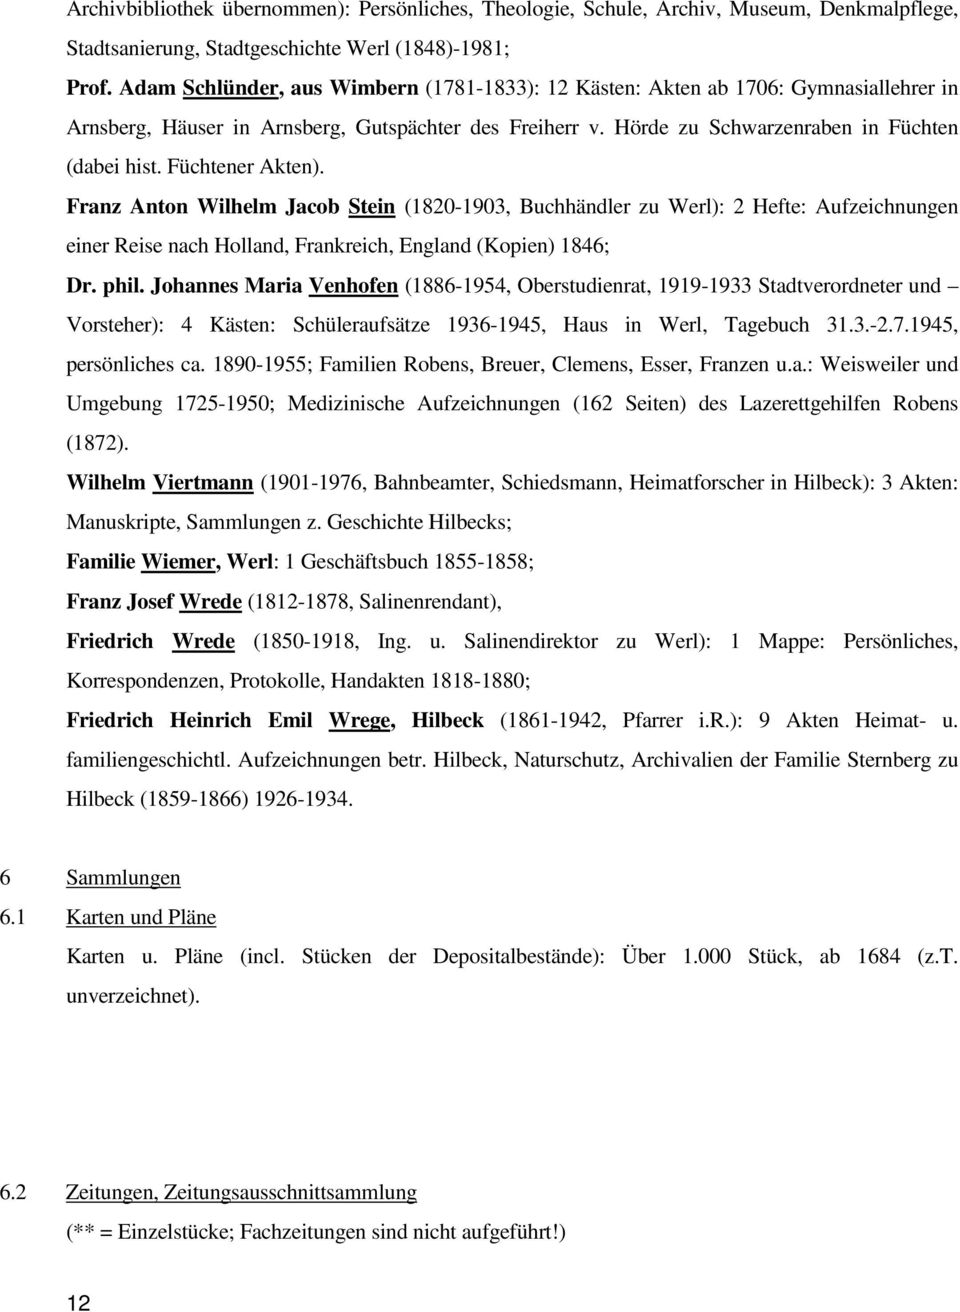 Füchtener Akten). Franz Anton Wilhelm Jacob Stein (1820-1903, Buchhändler zu Werl): 2 Hefte: Aufzeichnungen einer Reise nach Holland, Frankreich, England (Kopien) 1846; Dr. phil.